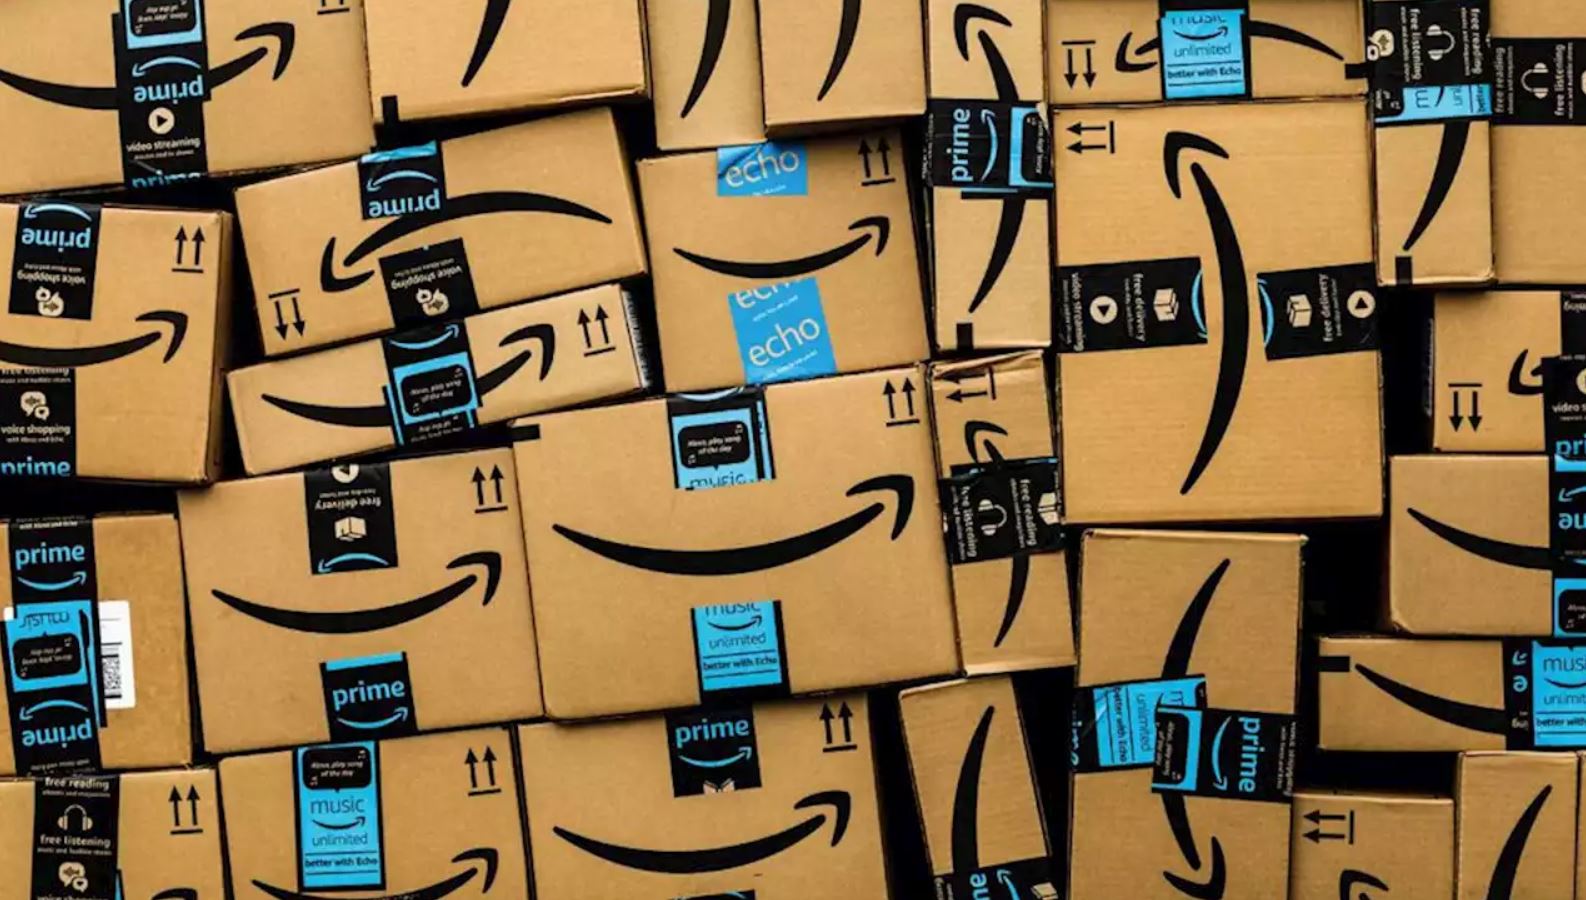 Natale da record per Amazon: miliardi di prodotti ordinati thumbnail